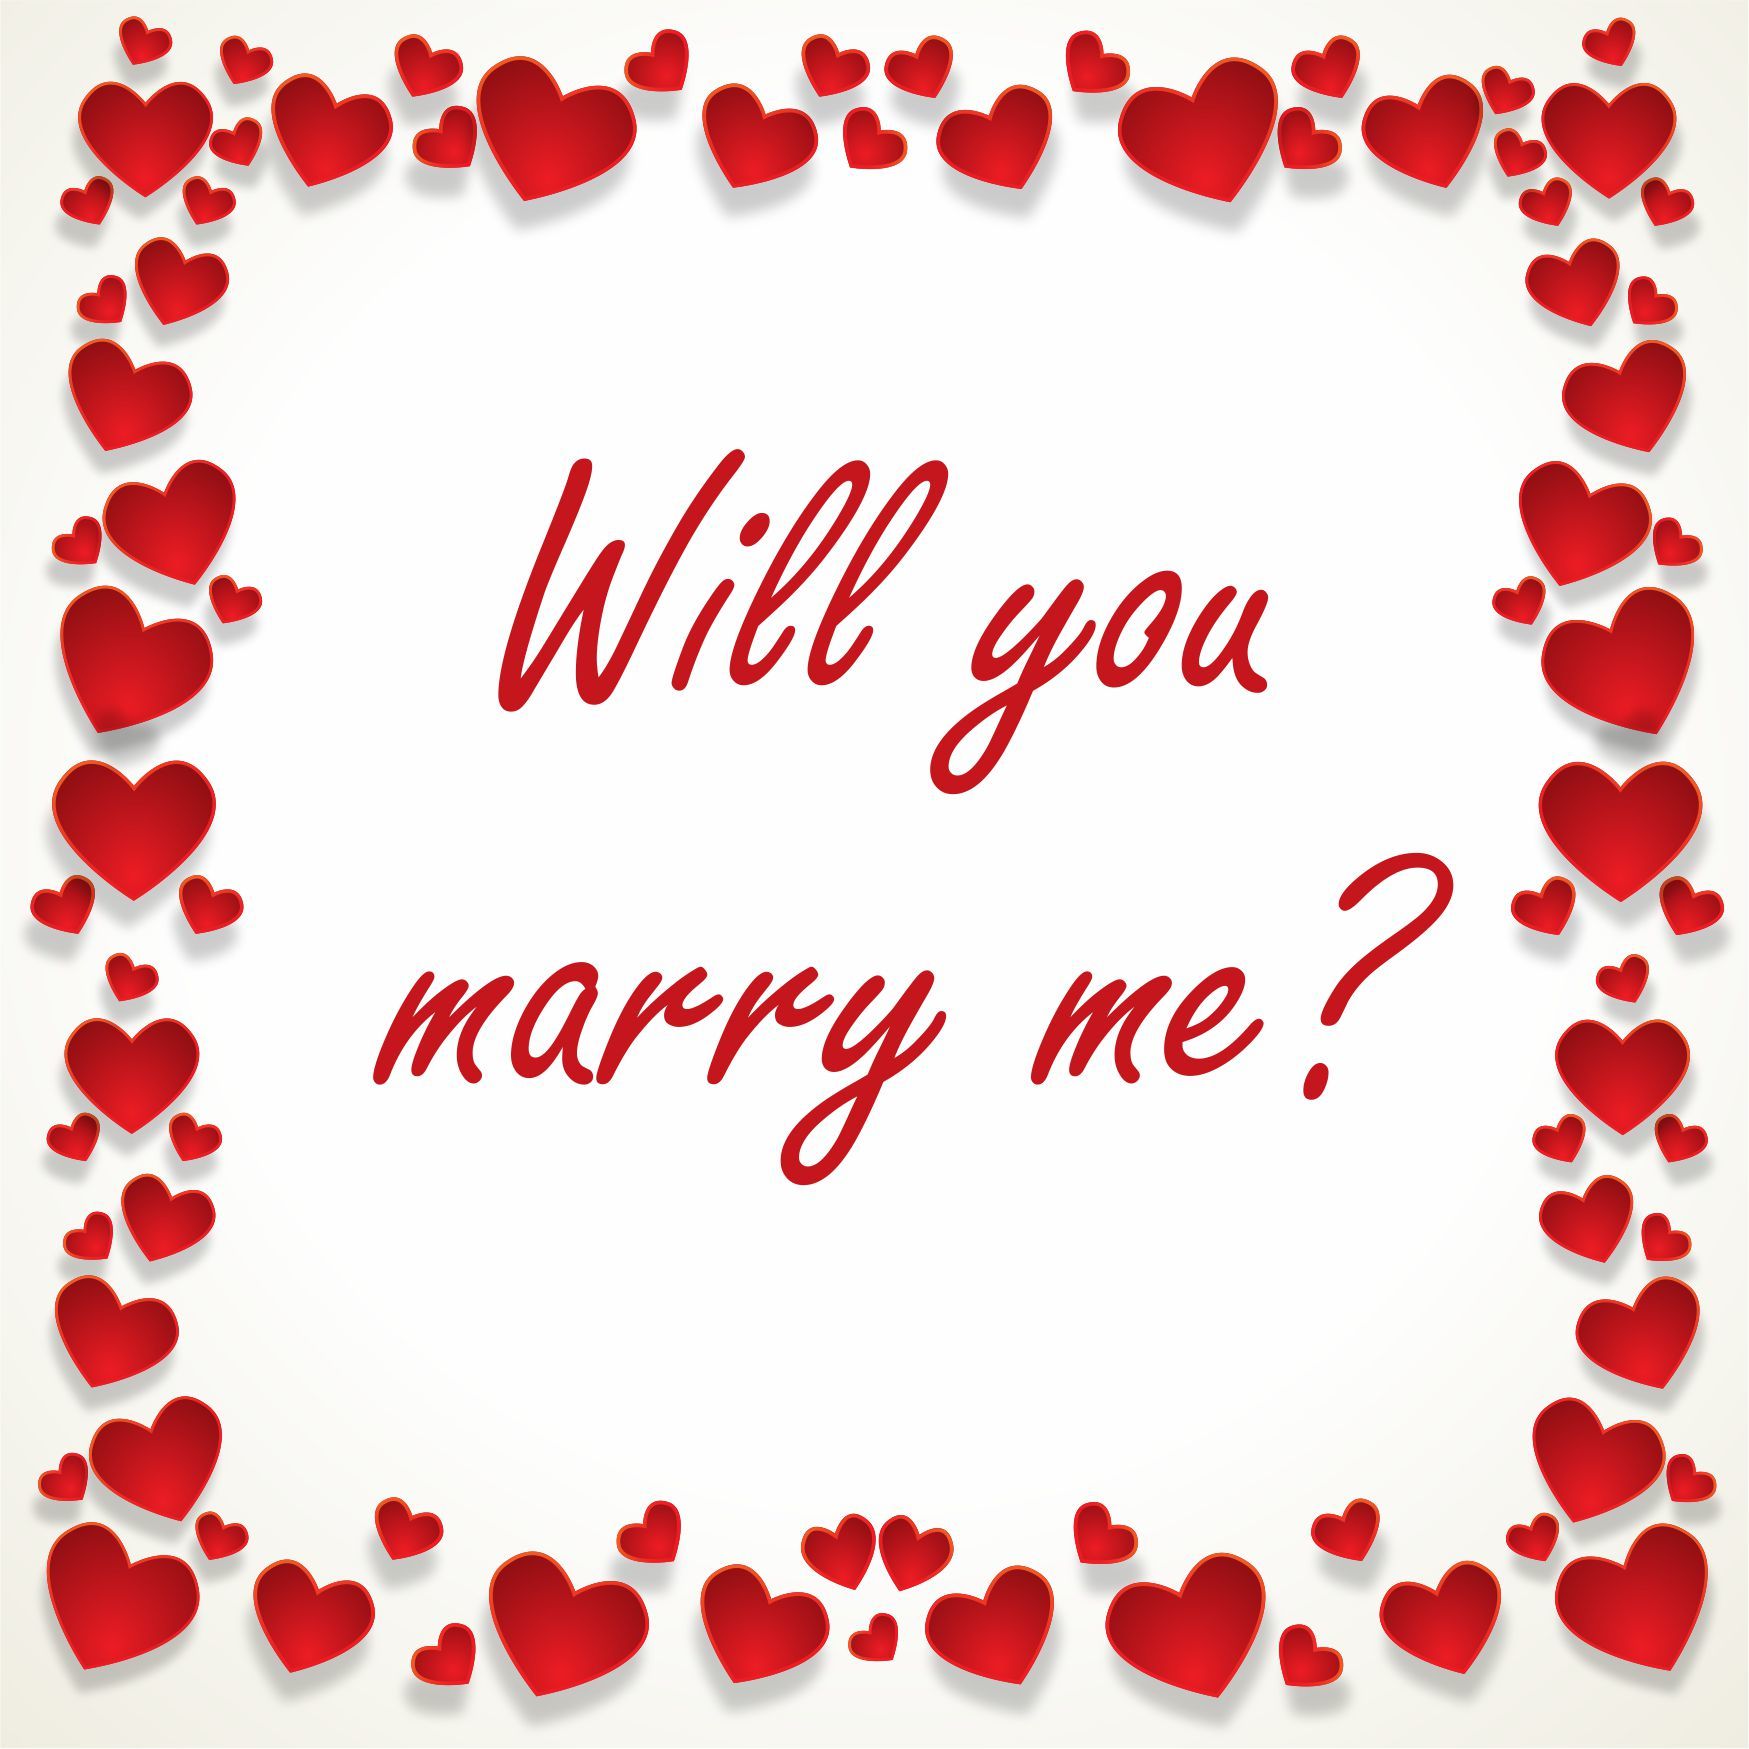 Huwelijksaanzoek tegeltje will you marry me?